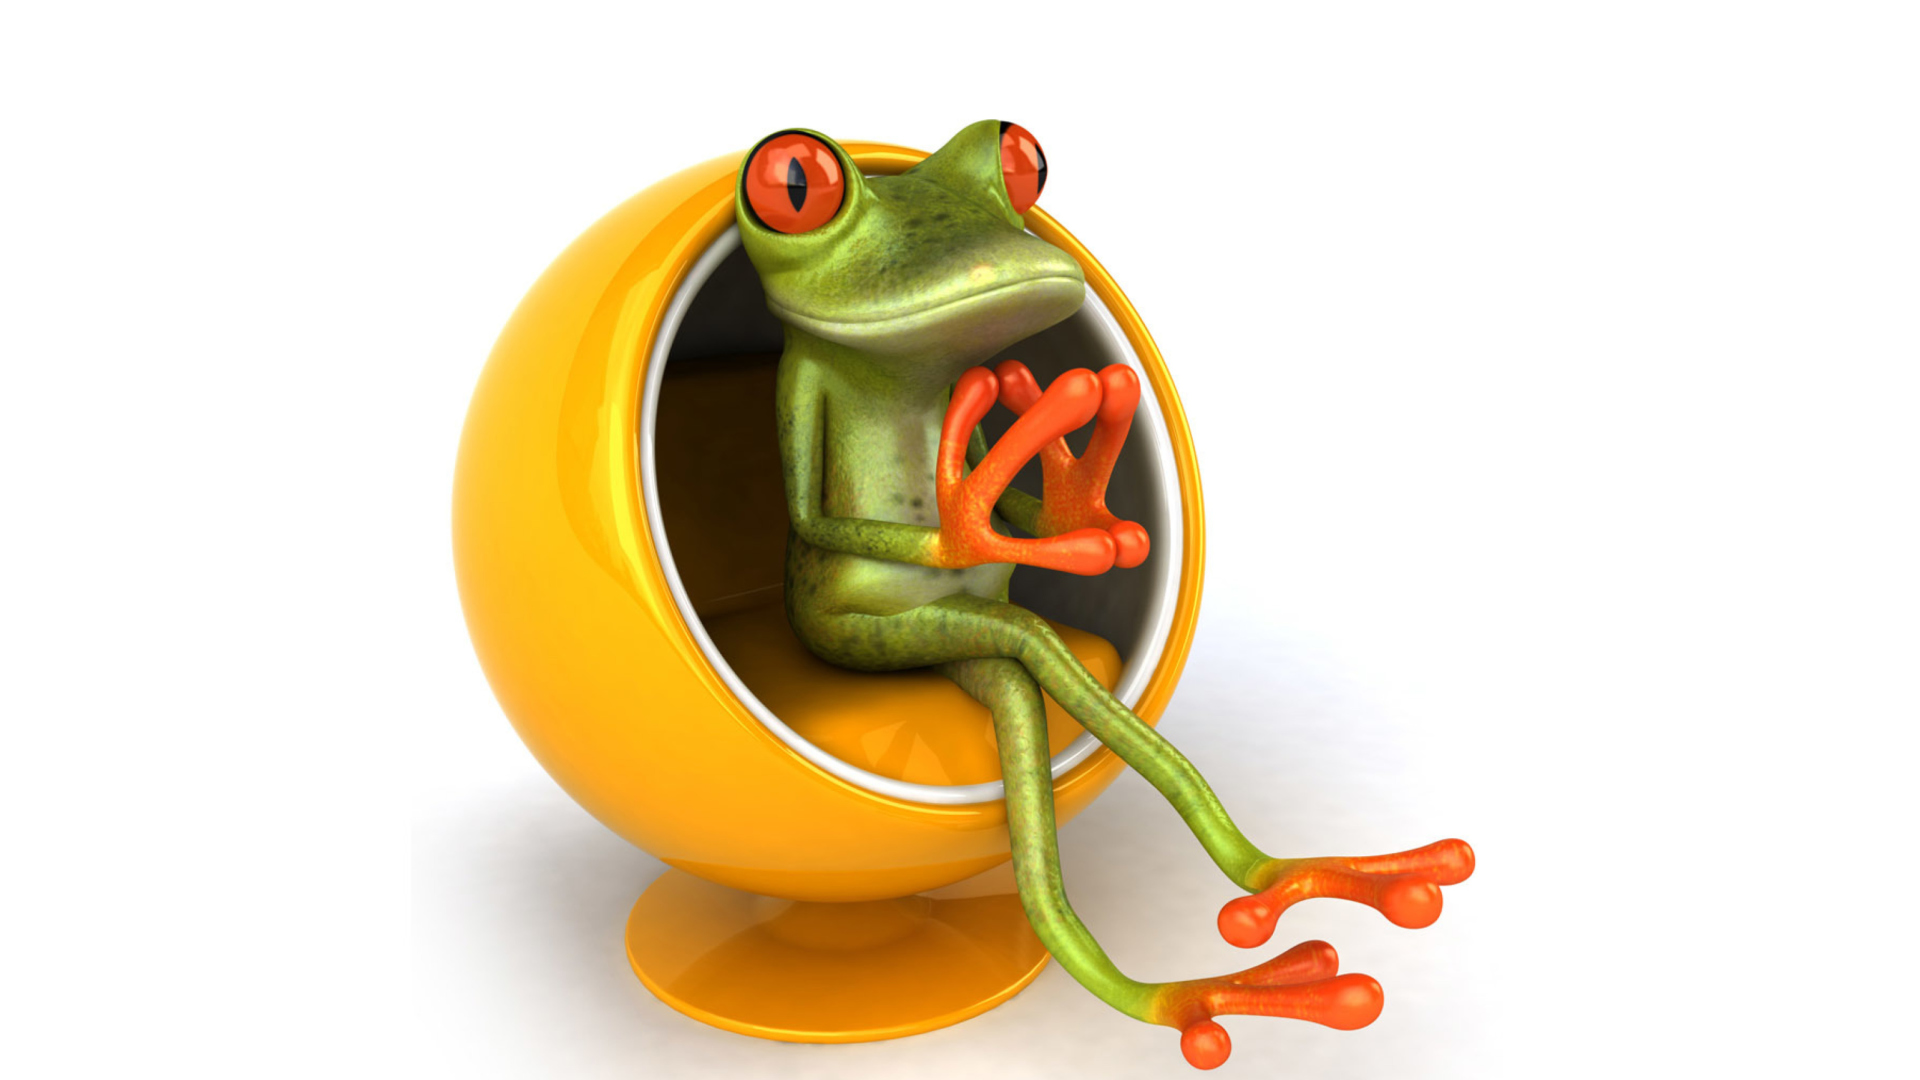 Обои 3D Frog On Yellow Chair 1920x1080